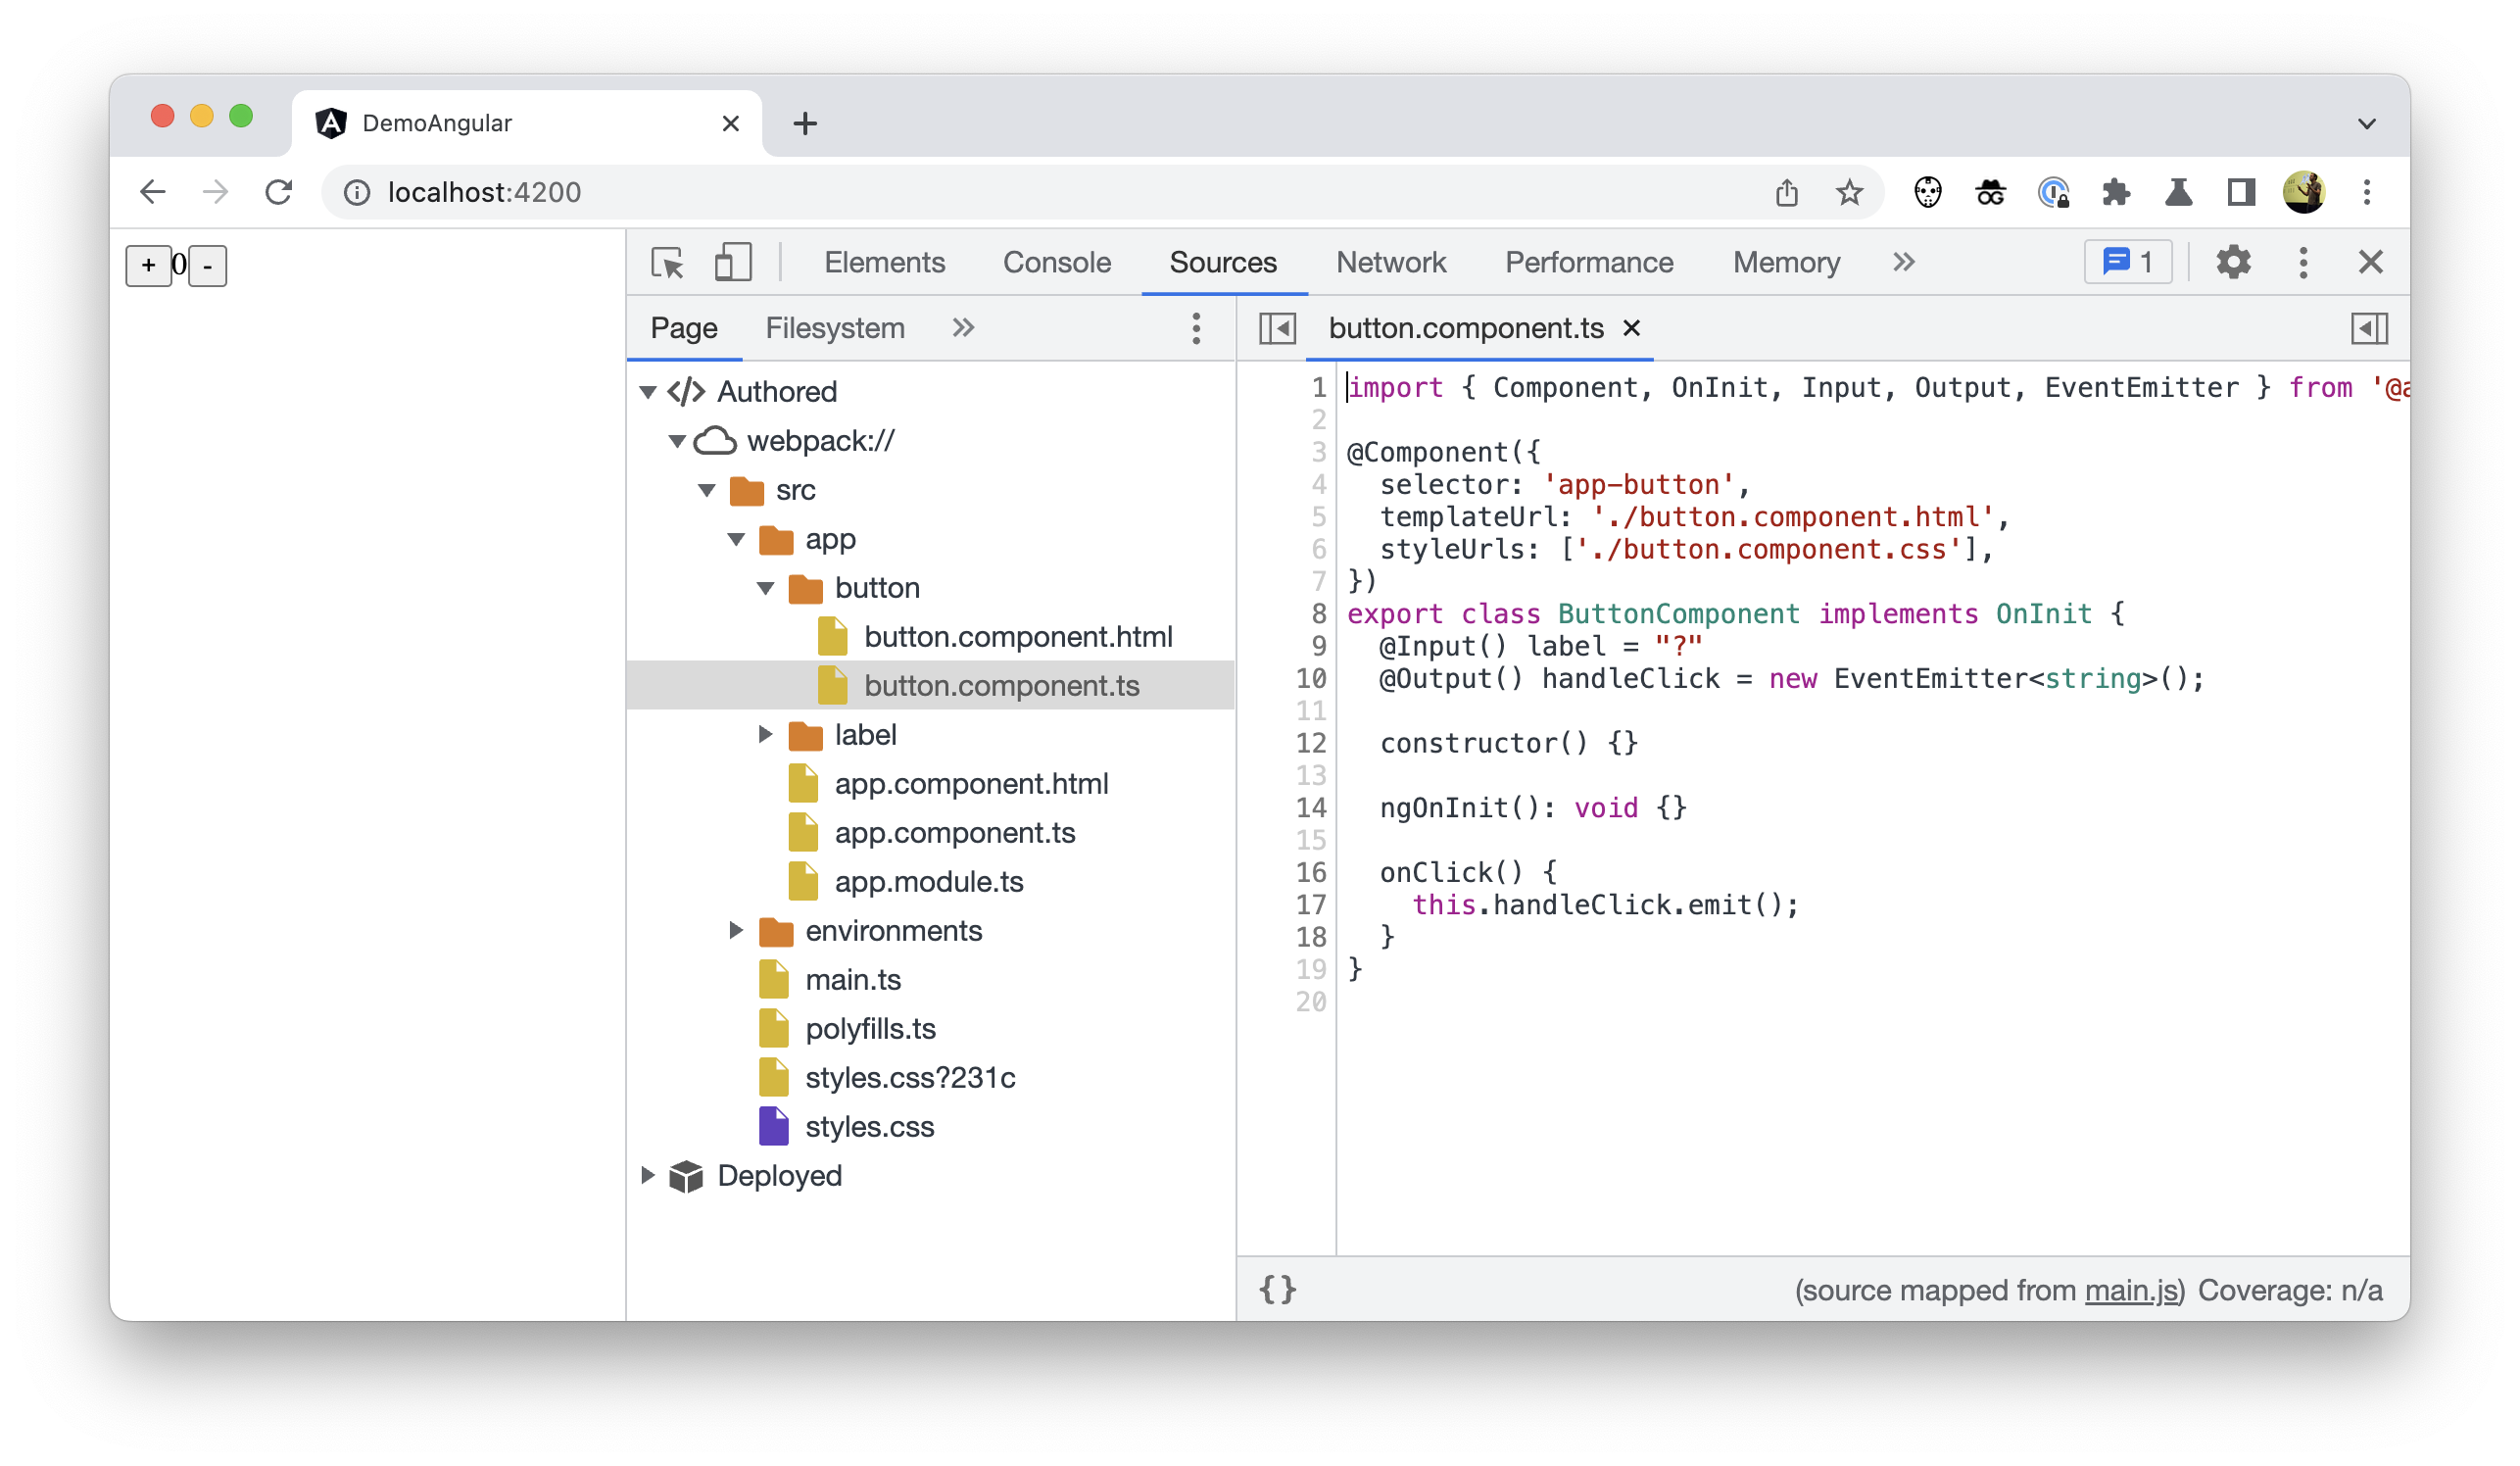 Chrome 開發人員工具中的檔案樹狀結構螢幕截圖，顯示已編寫的程式碼，但未顯示 node_modules。